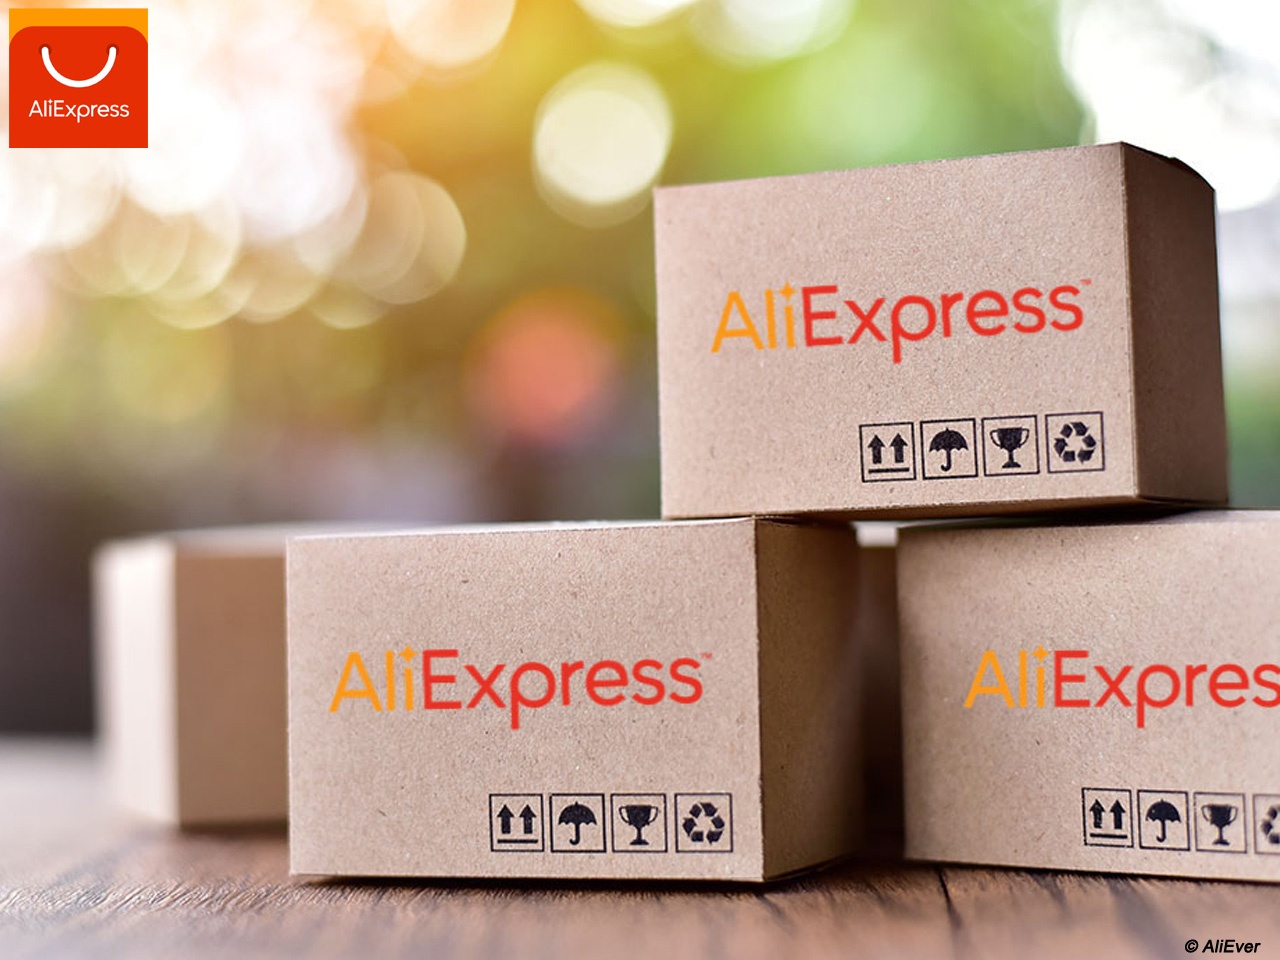 La livraison en 3 jours sur AliExpress est disponible en France